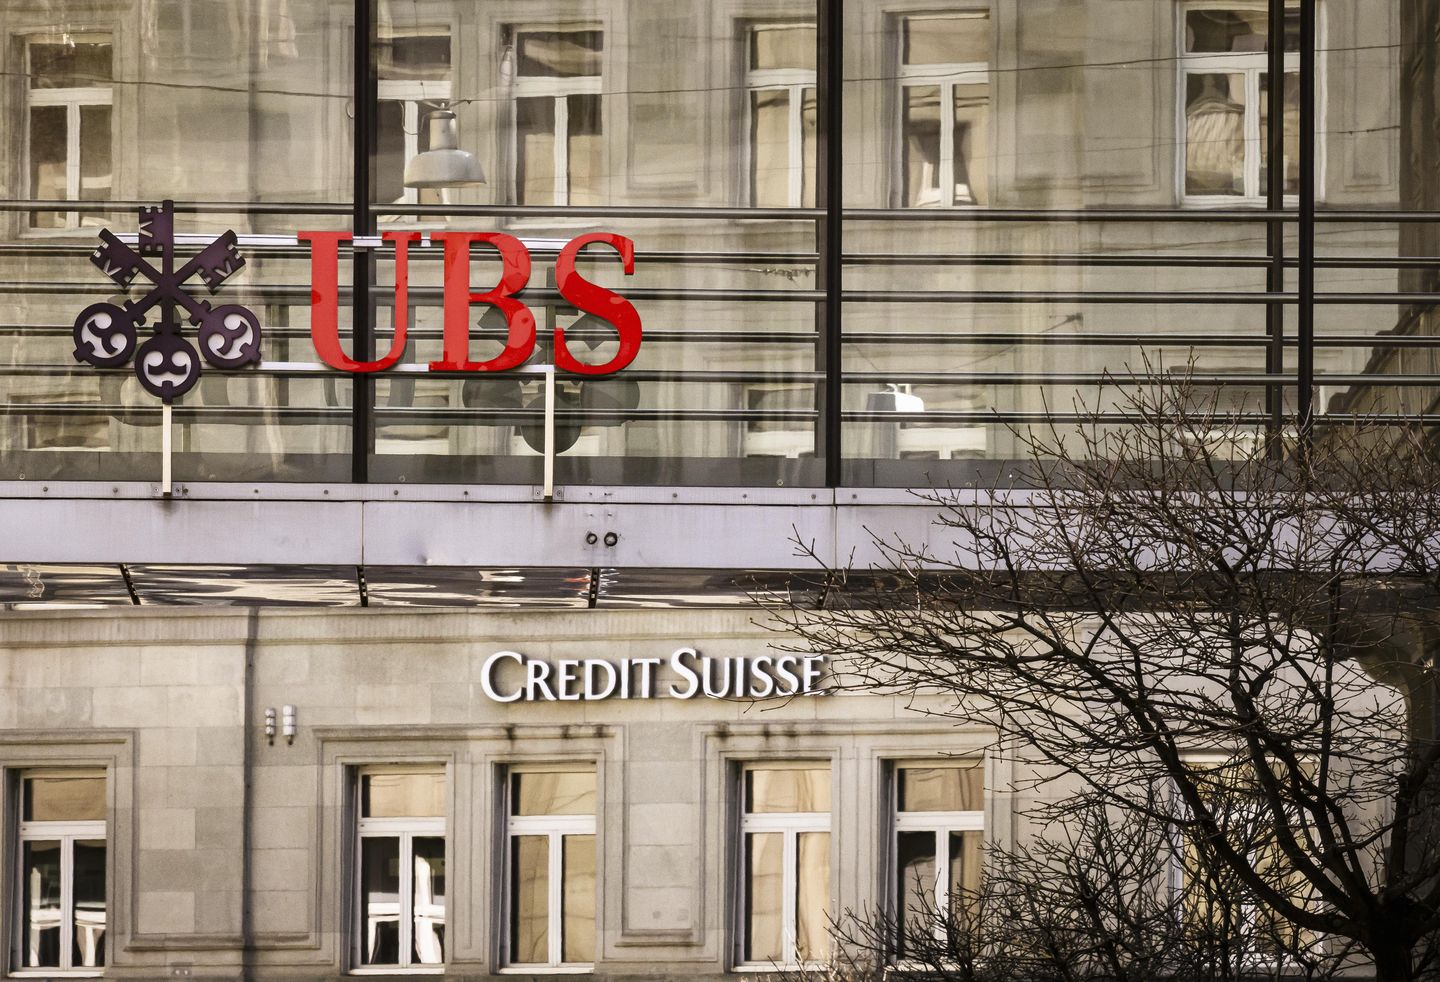 Pelanggan Credit Suisse merasakan campuran kemarahan, kelegaan setelah penjualan